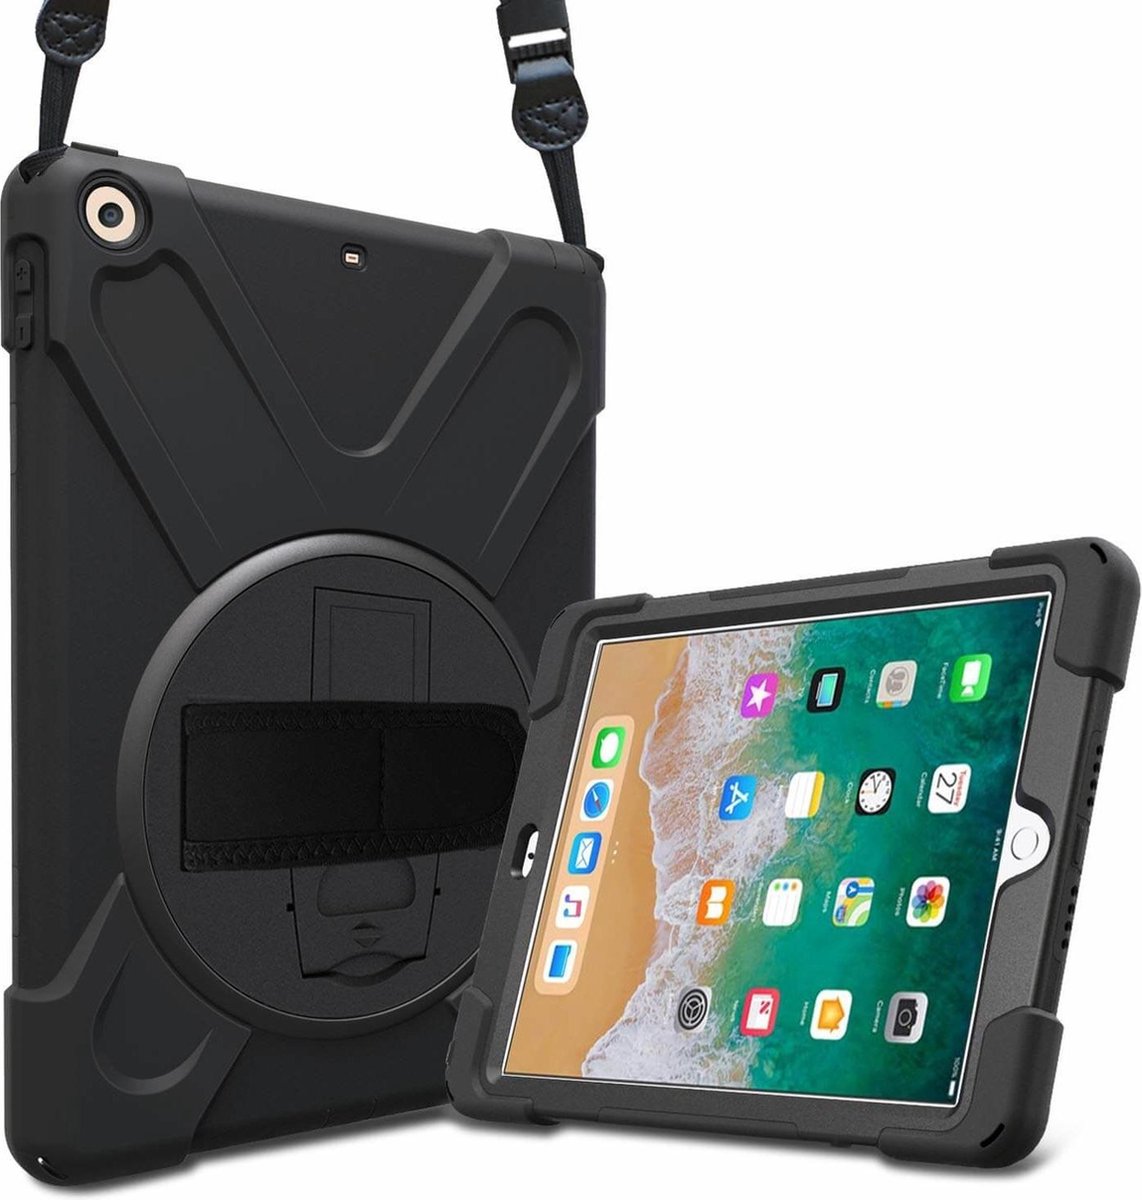 iPadspullekes - Apple iPad 2018 (9.7 Inch) Protector Case - Robuuste ...